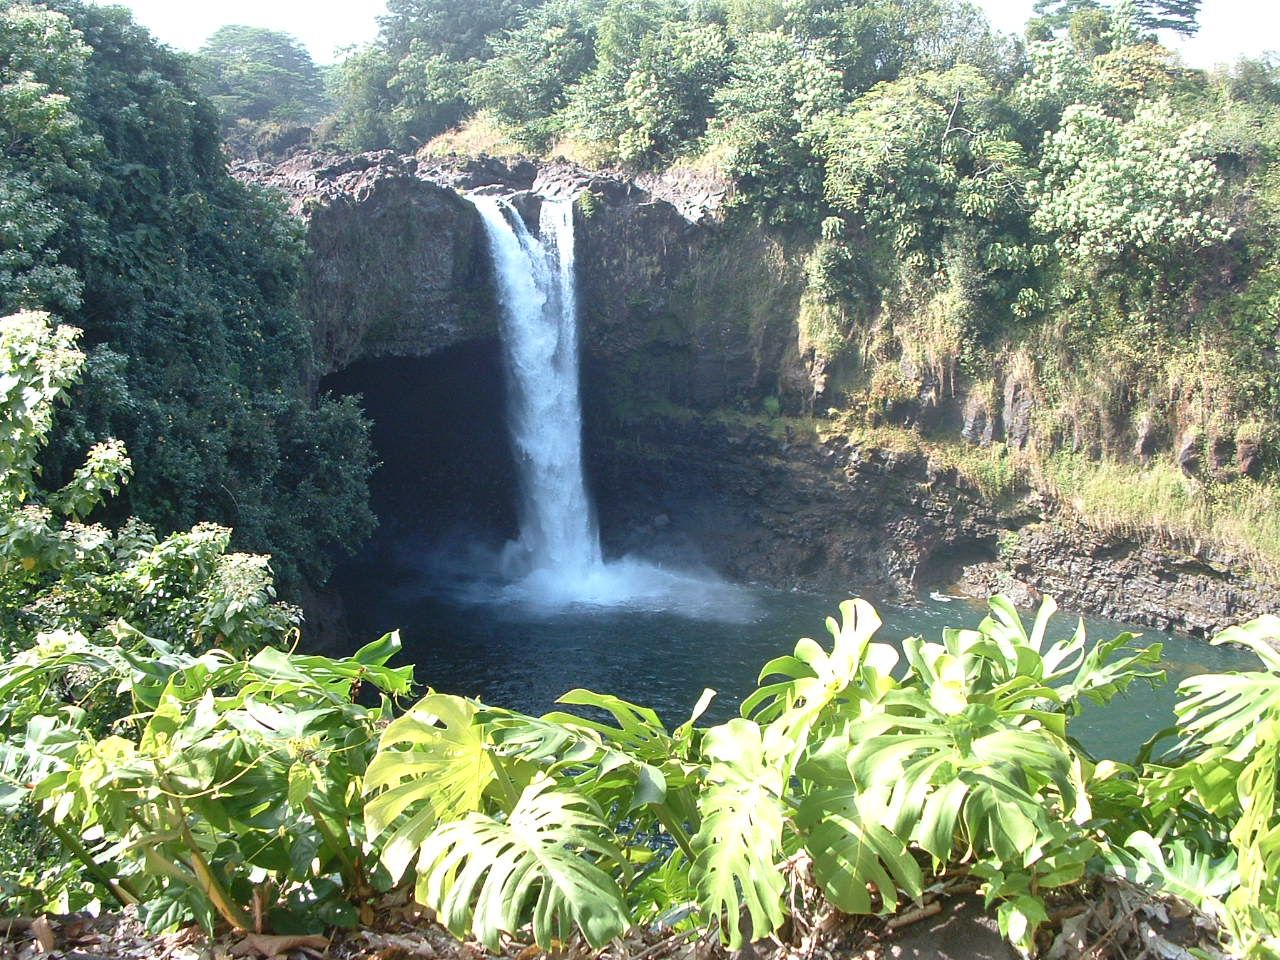 Waiānuenue (Rainbow Falls), Hilo, Hawai‘i